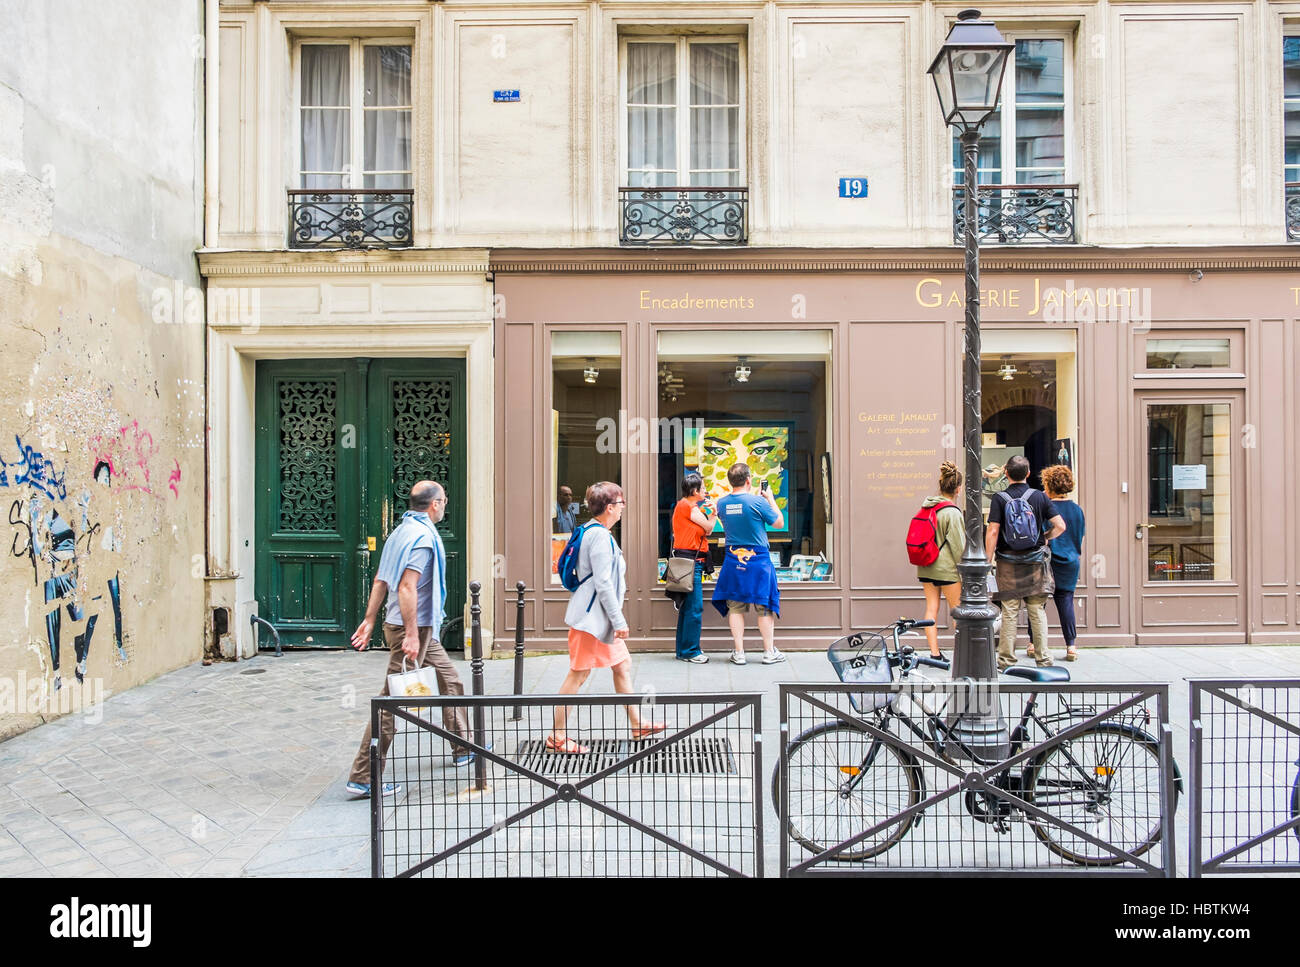 Escena en la calle en frente del galerie jamaut, distrito de Marais Foto de stock